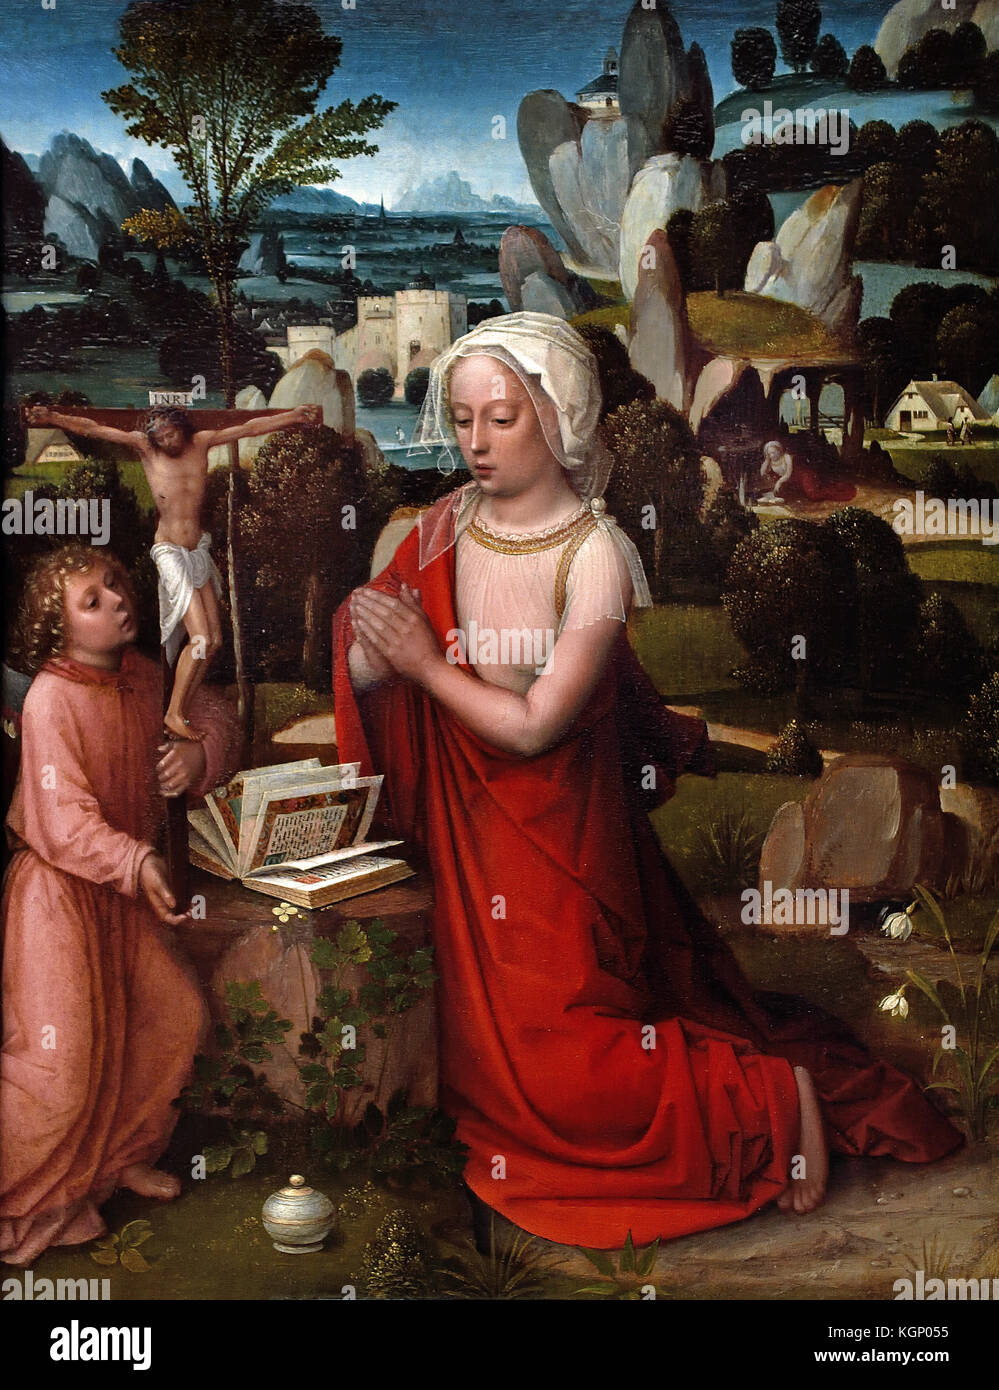 Dans un paysage de la Madeleine Albert Cornelis 1512 active,est mort 1531, Bruges, Belgique, Belge, flamand, ( Marie Madeleine est en prière devant un crucifix et un livre qui est tenue par un ange ; le pot contenant l'onguent avec laquelle elle a oint Christ est au premier plan. ) Banque D'Images